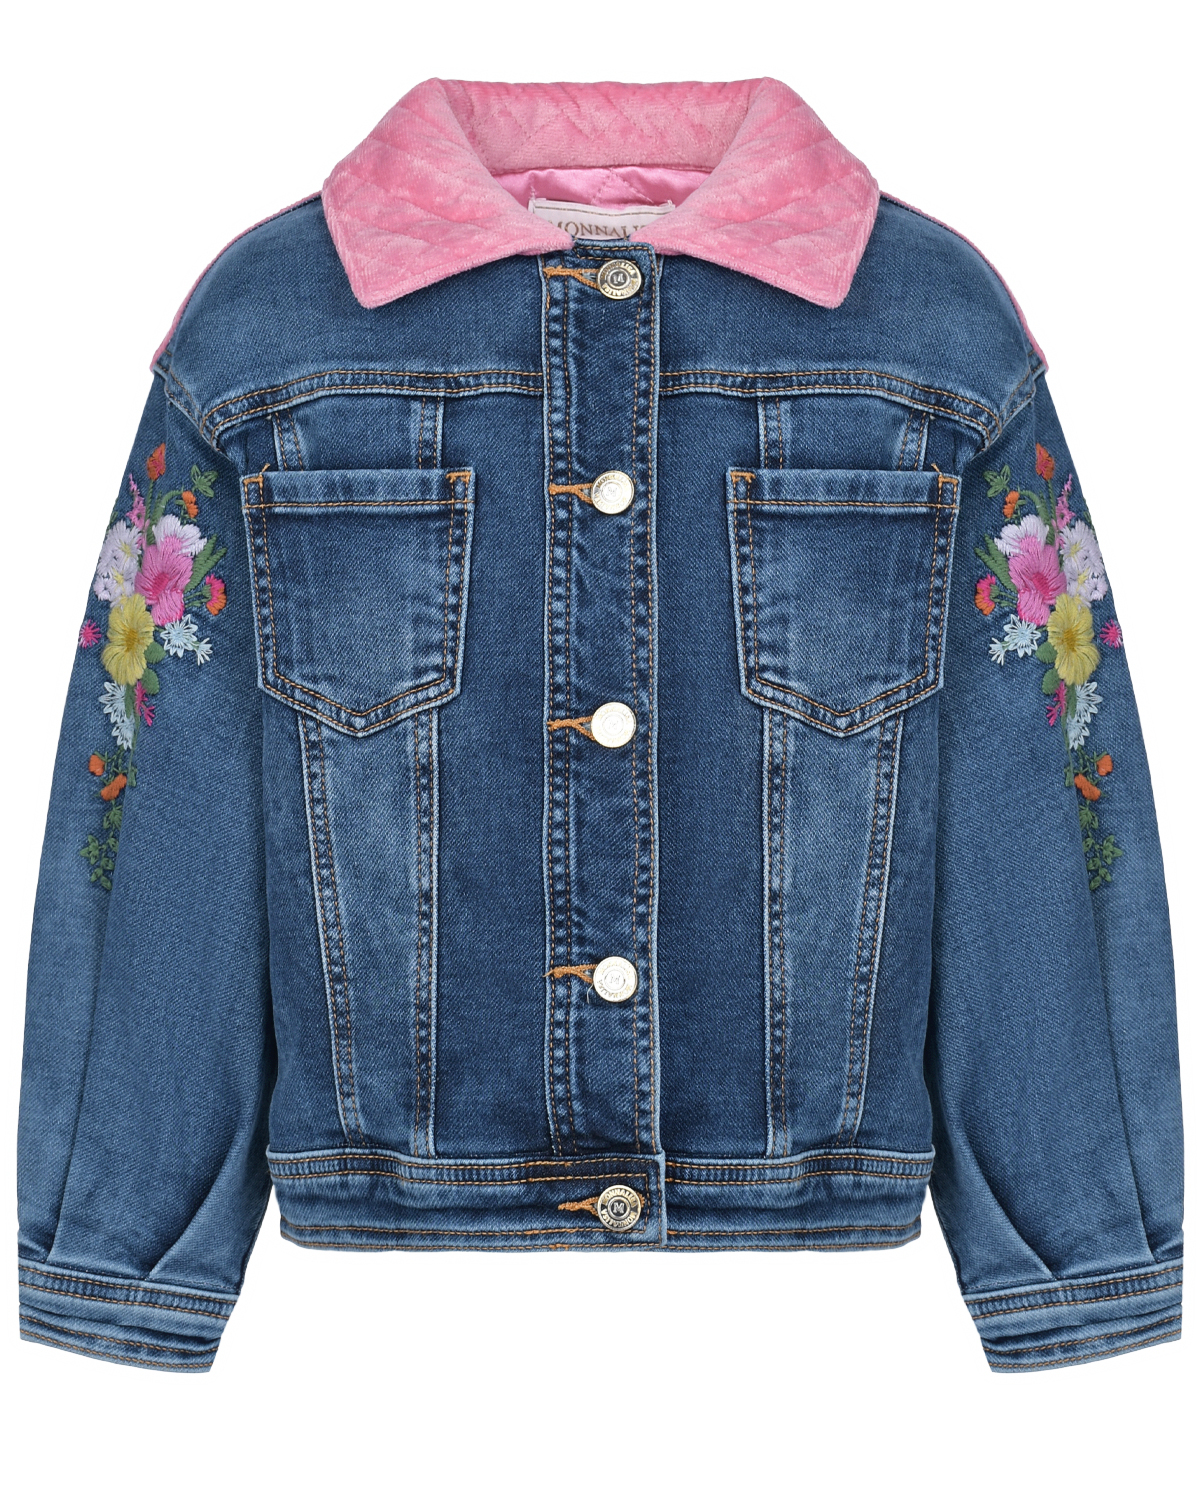 Джинсовая куртка с цветочной вышивкой Monnalisa детская